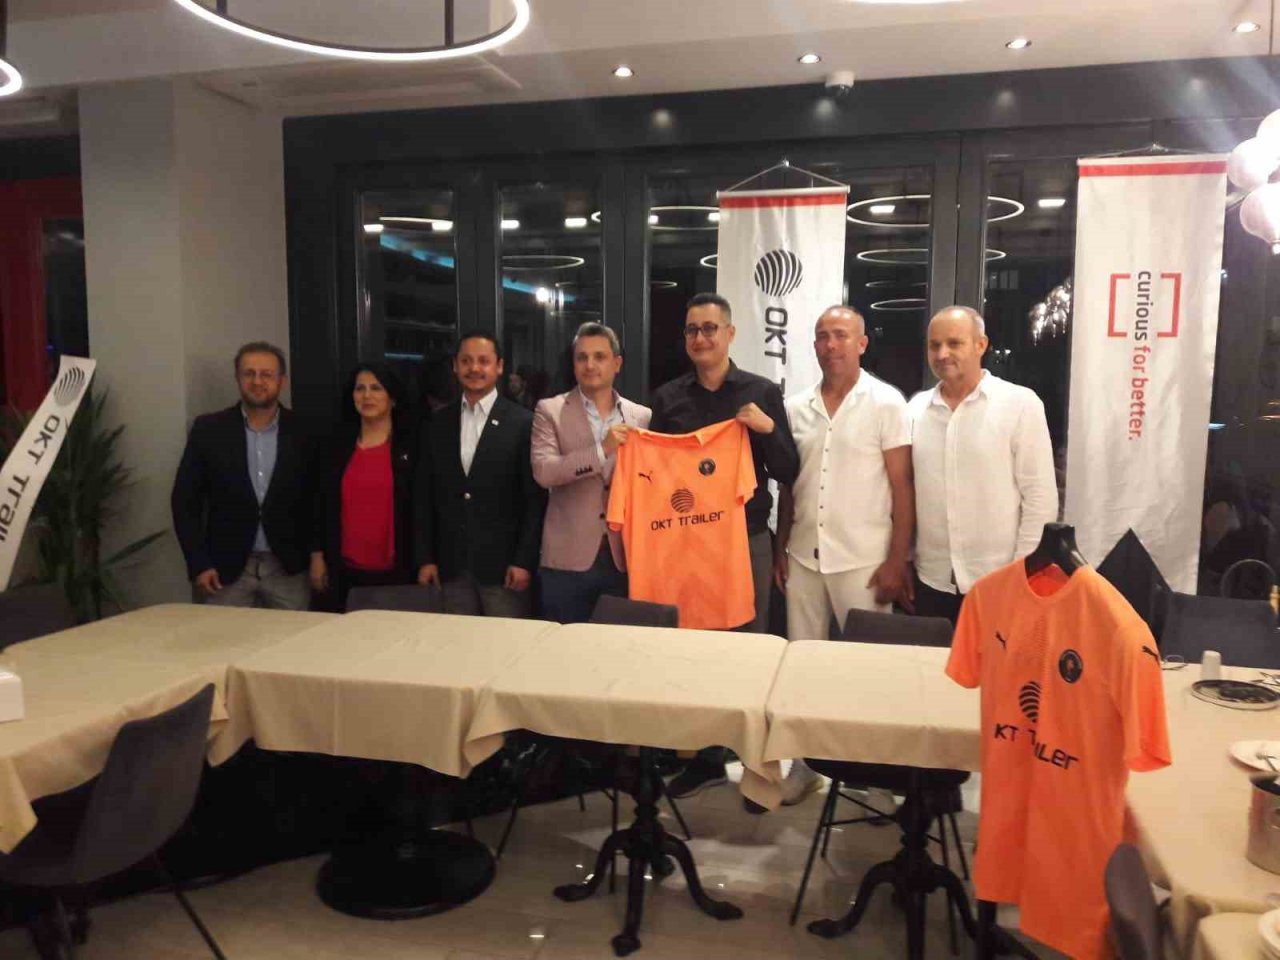 OKT Trailer Genel Müdürü Hakan Maraş: “Hedefimiz profesyonel lig”